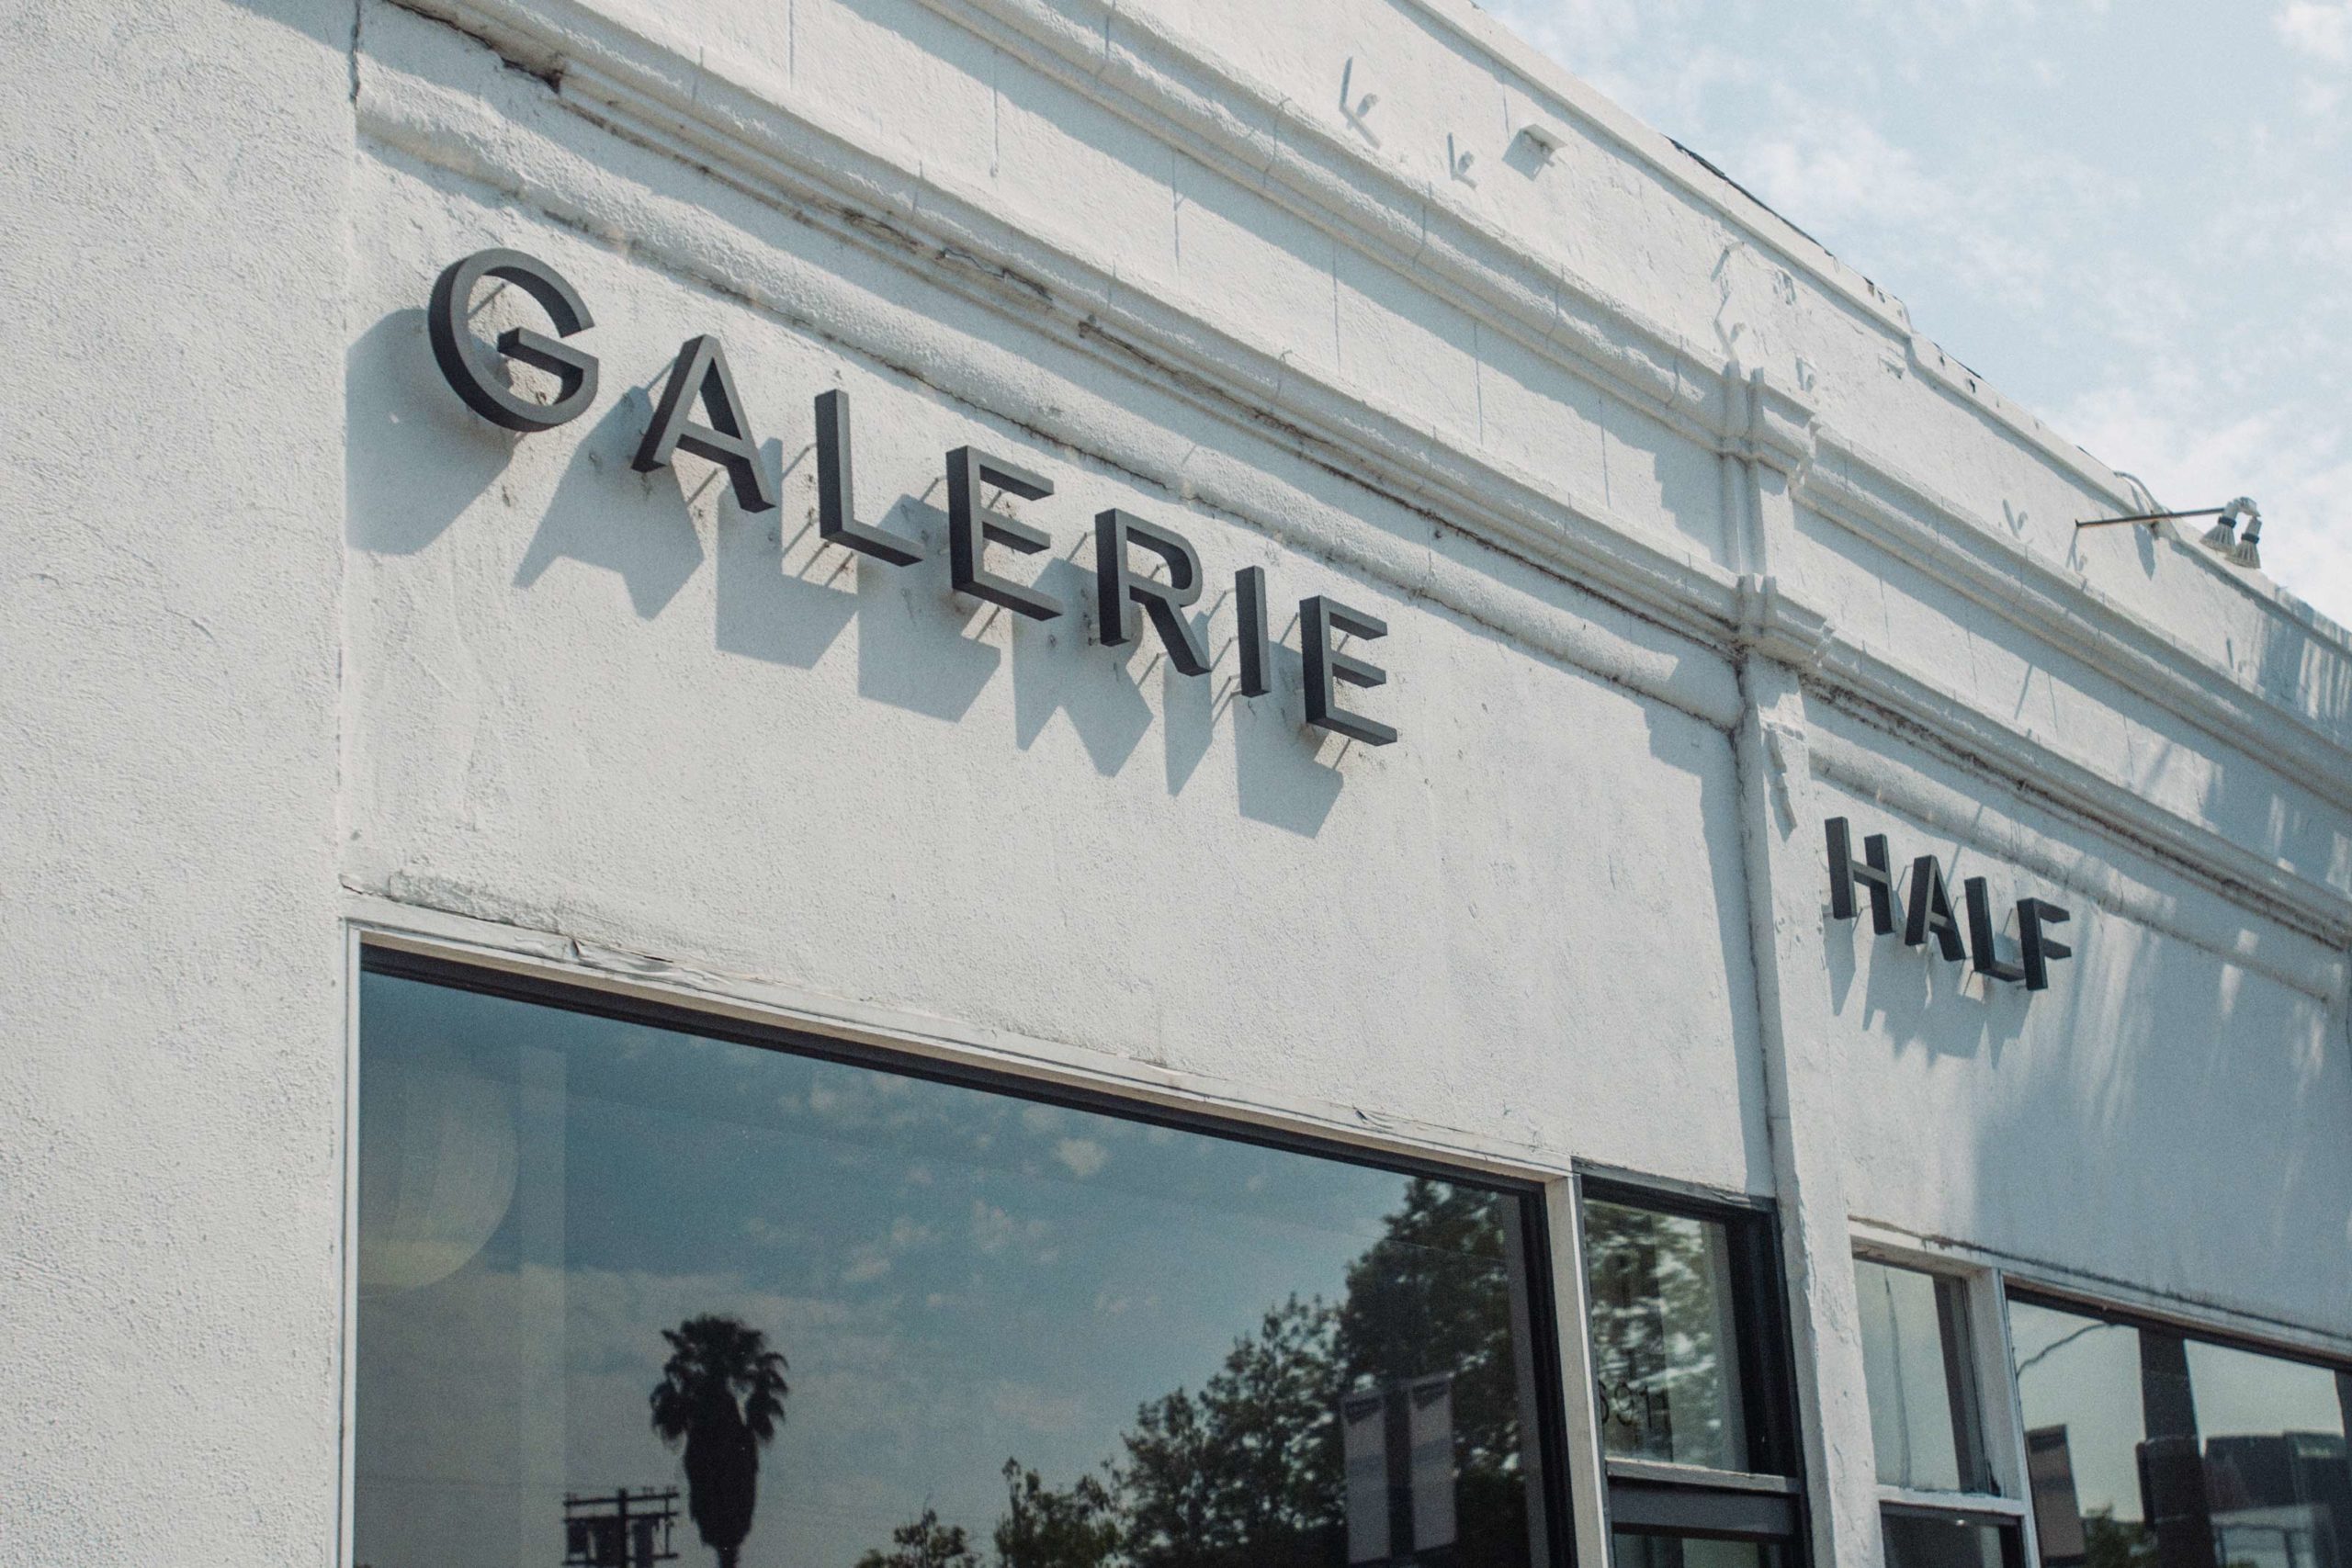 Galerie Half